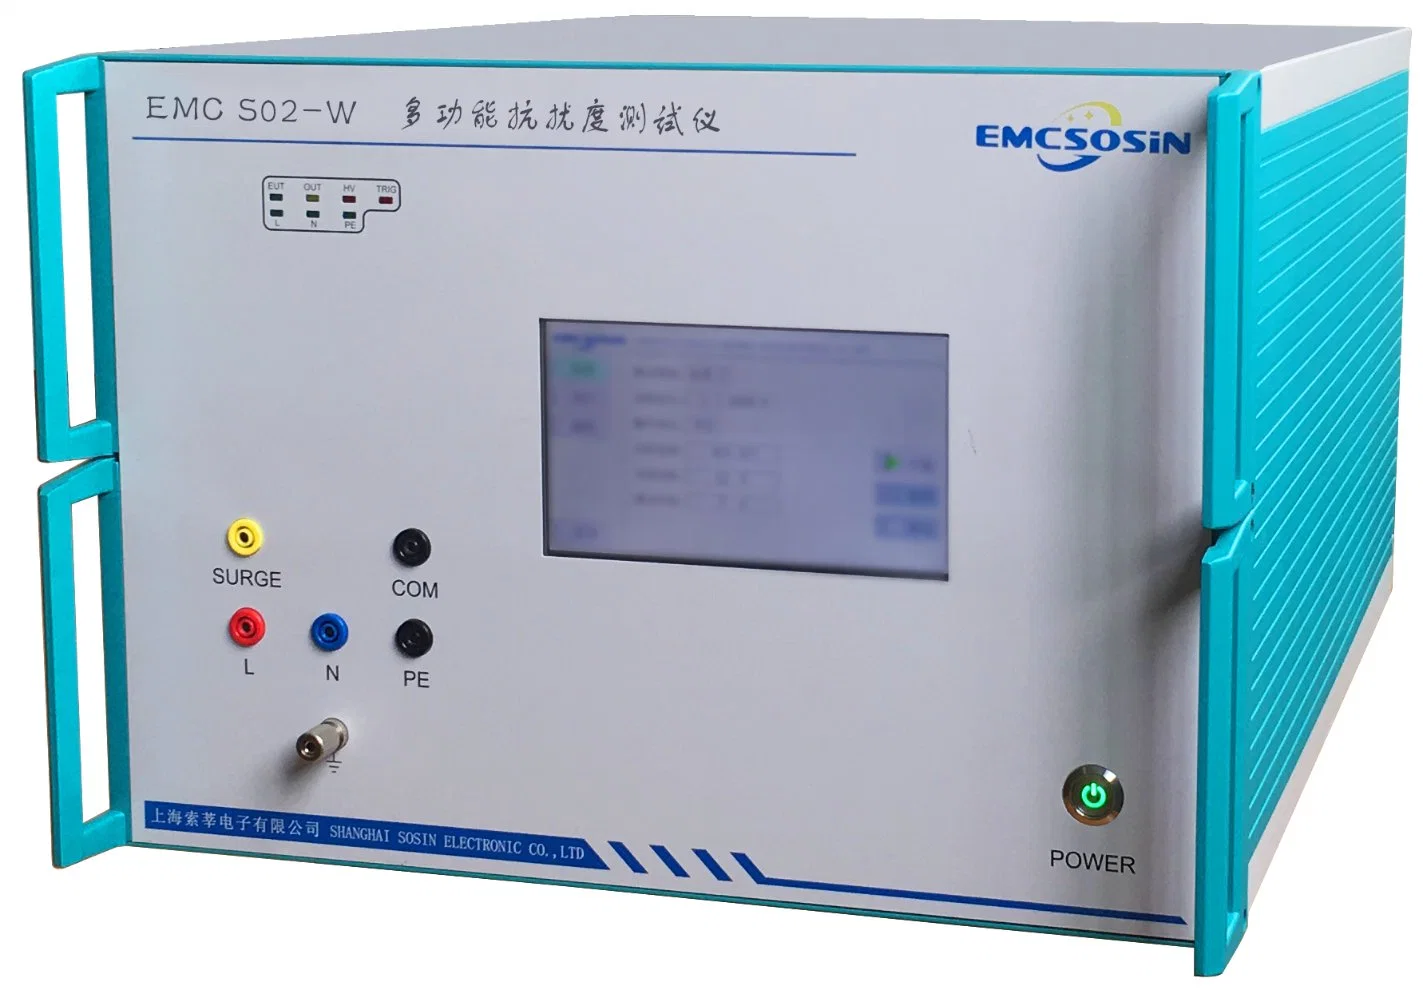 Equipamento de teste EMC tudo em um gerador de ESD/EFT/surge IEC/EN 61000-4 (EMC S03-W)